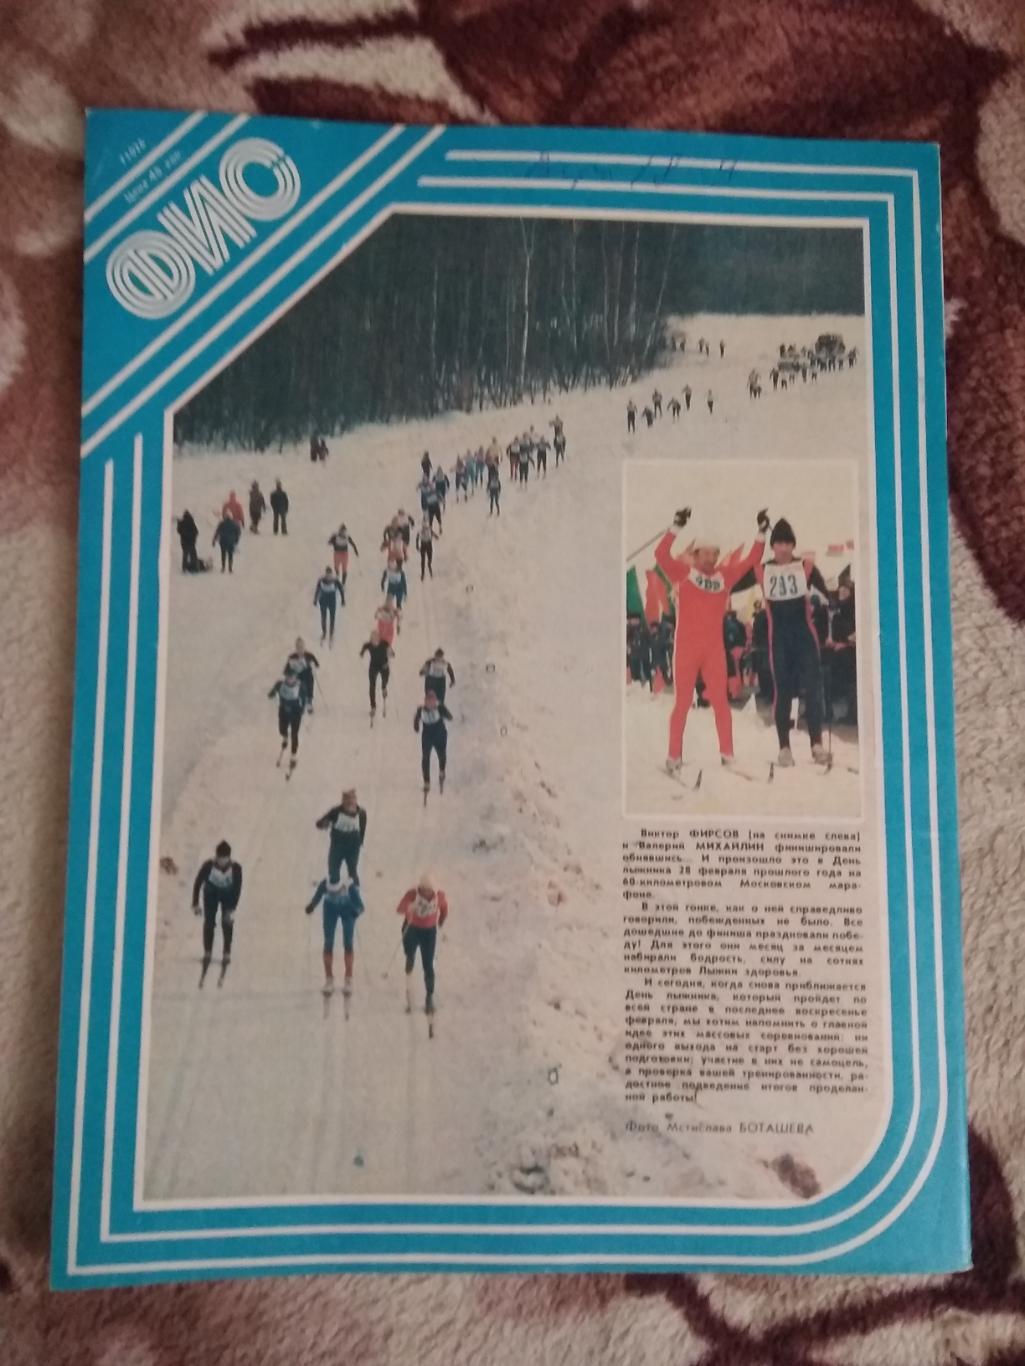 Журнал.Физкультура и спорт № 1 1983 г. (ФиС). 2